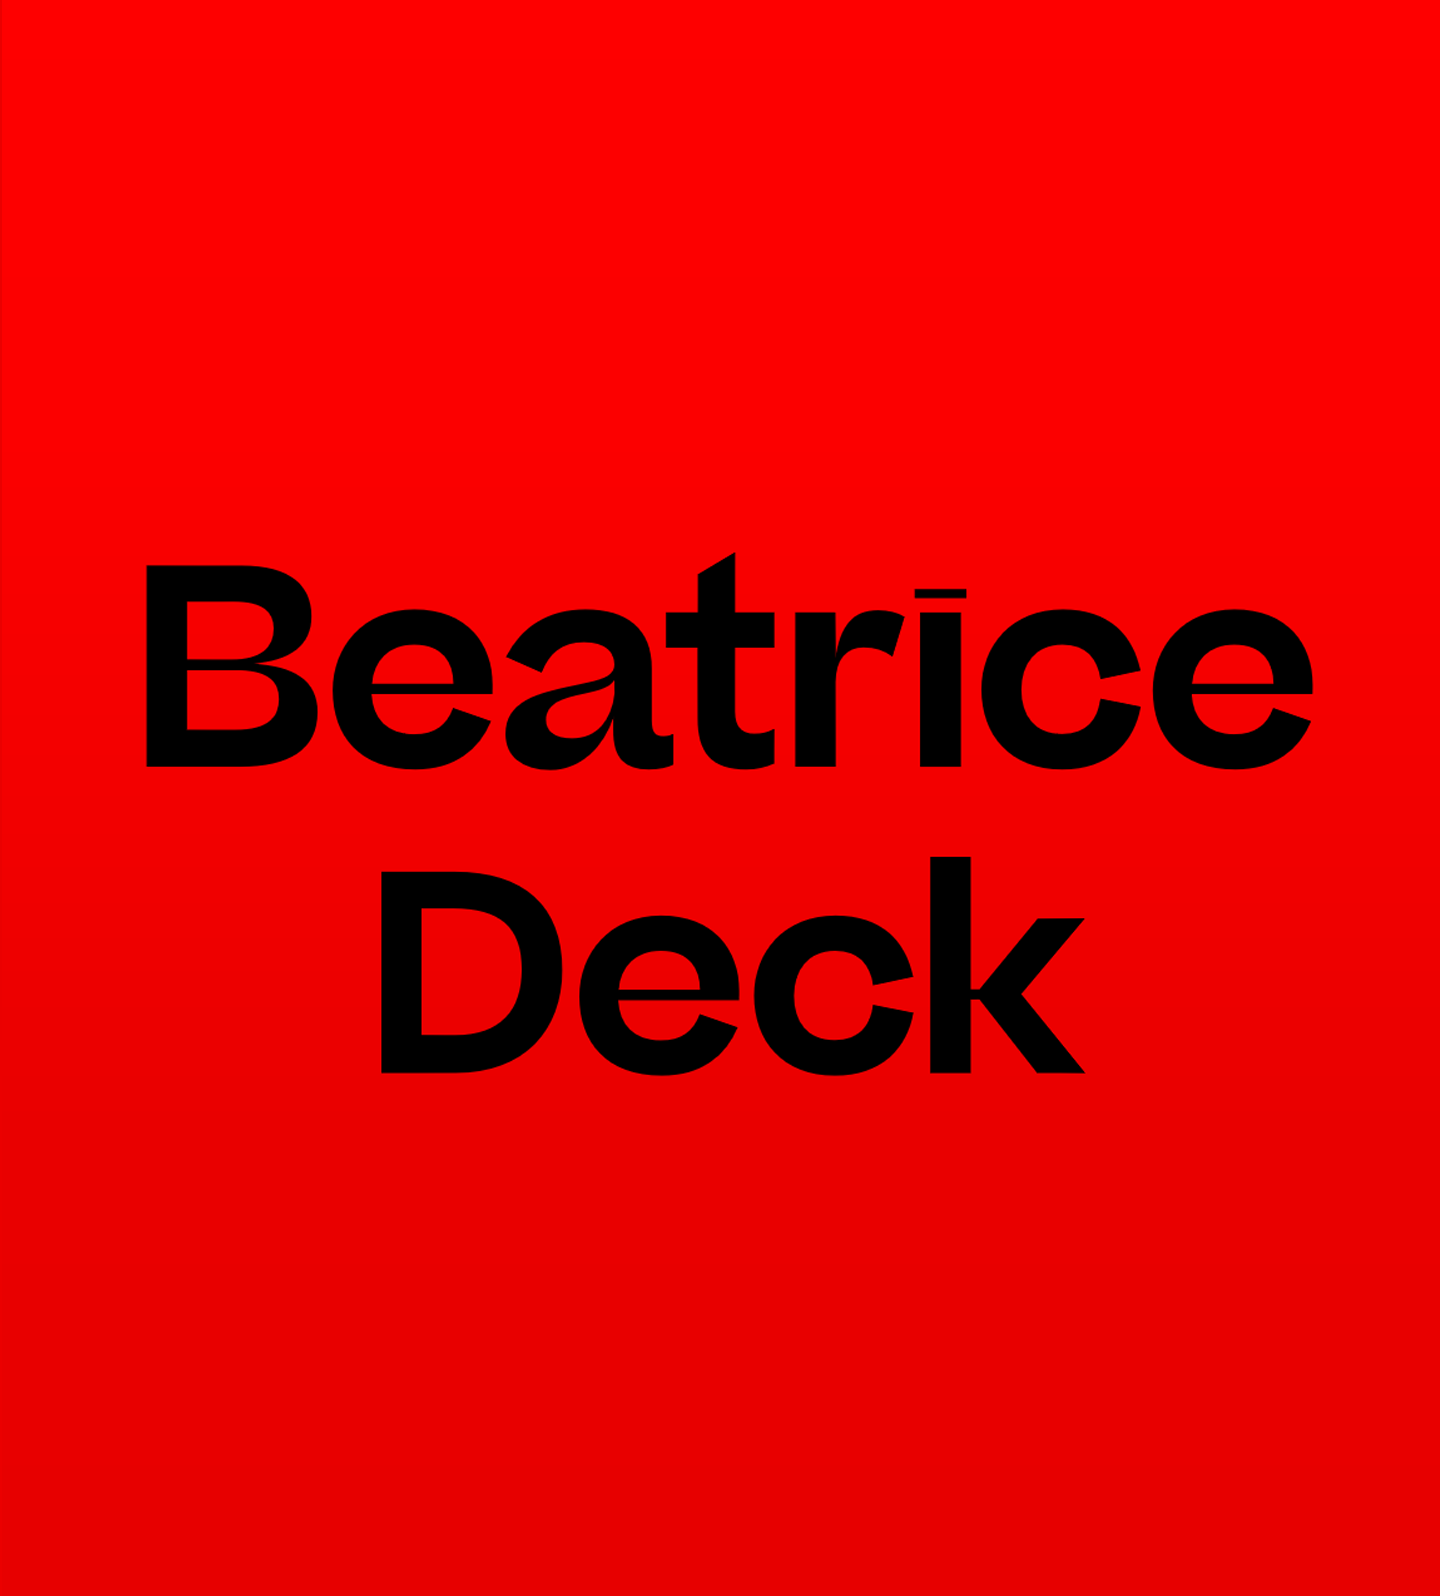 Пример шрифта Beatrice Deck Italic